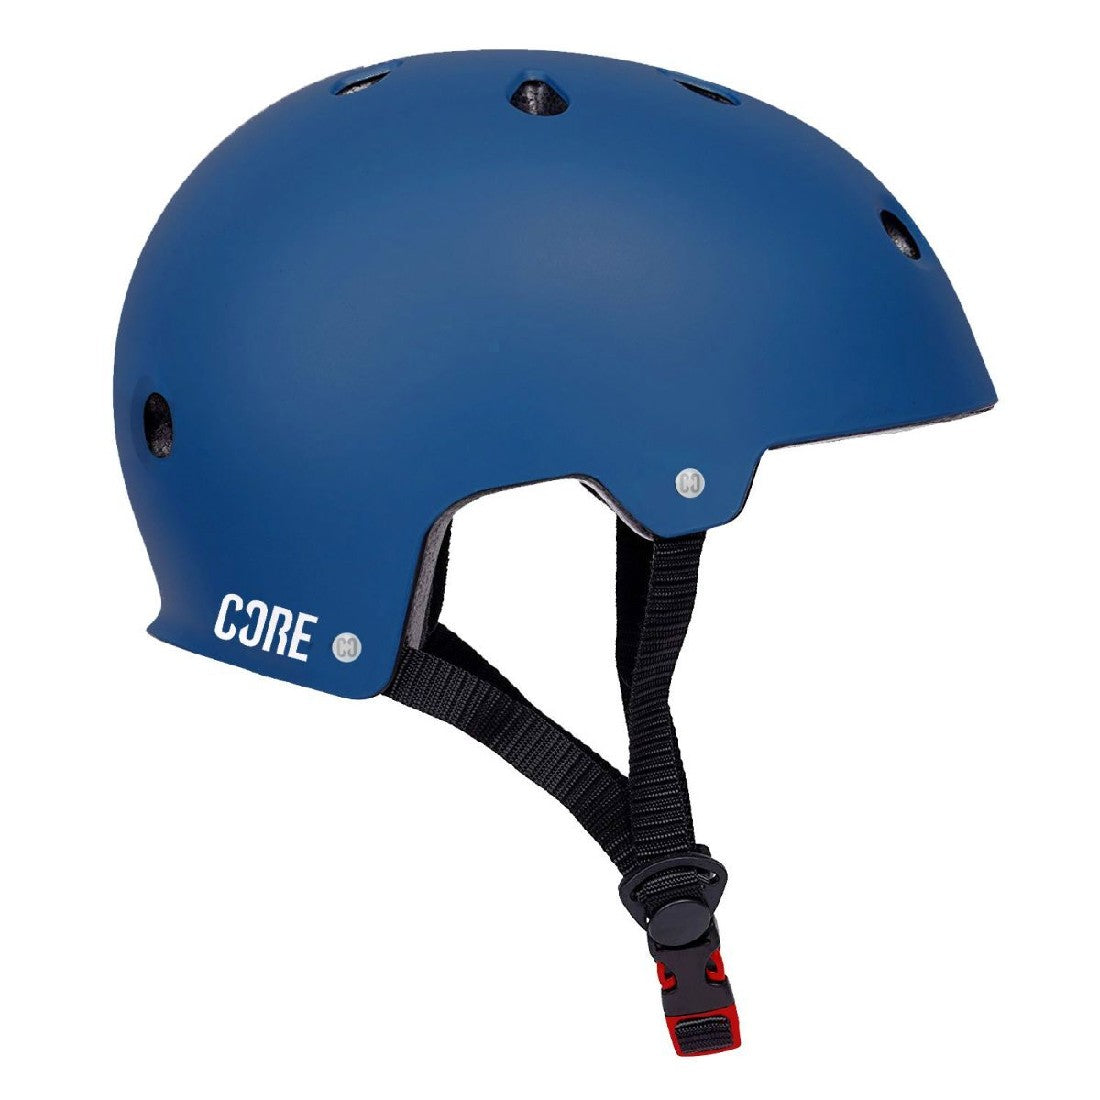 Core Action Sports Helmet Blue